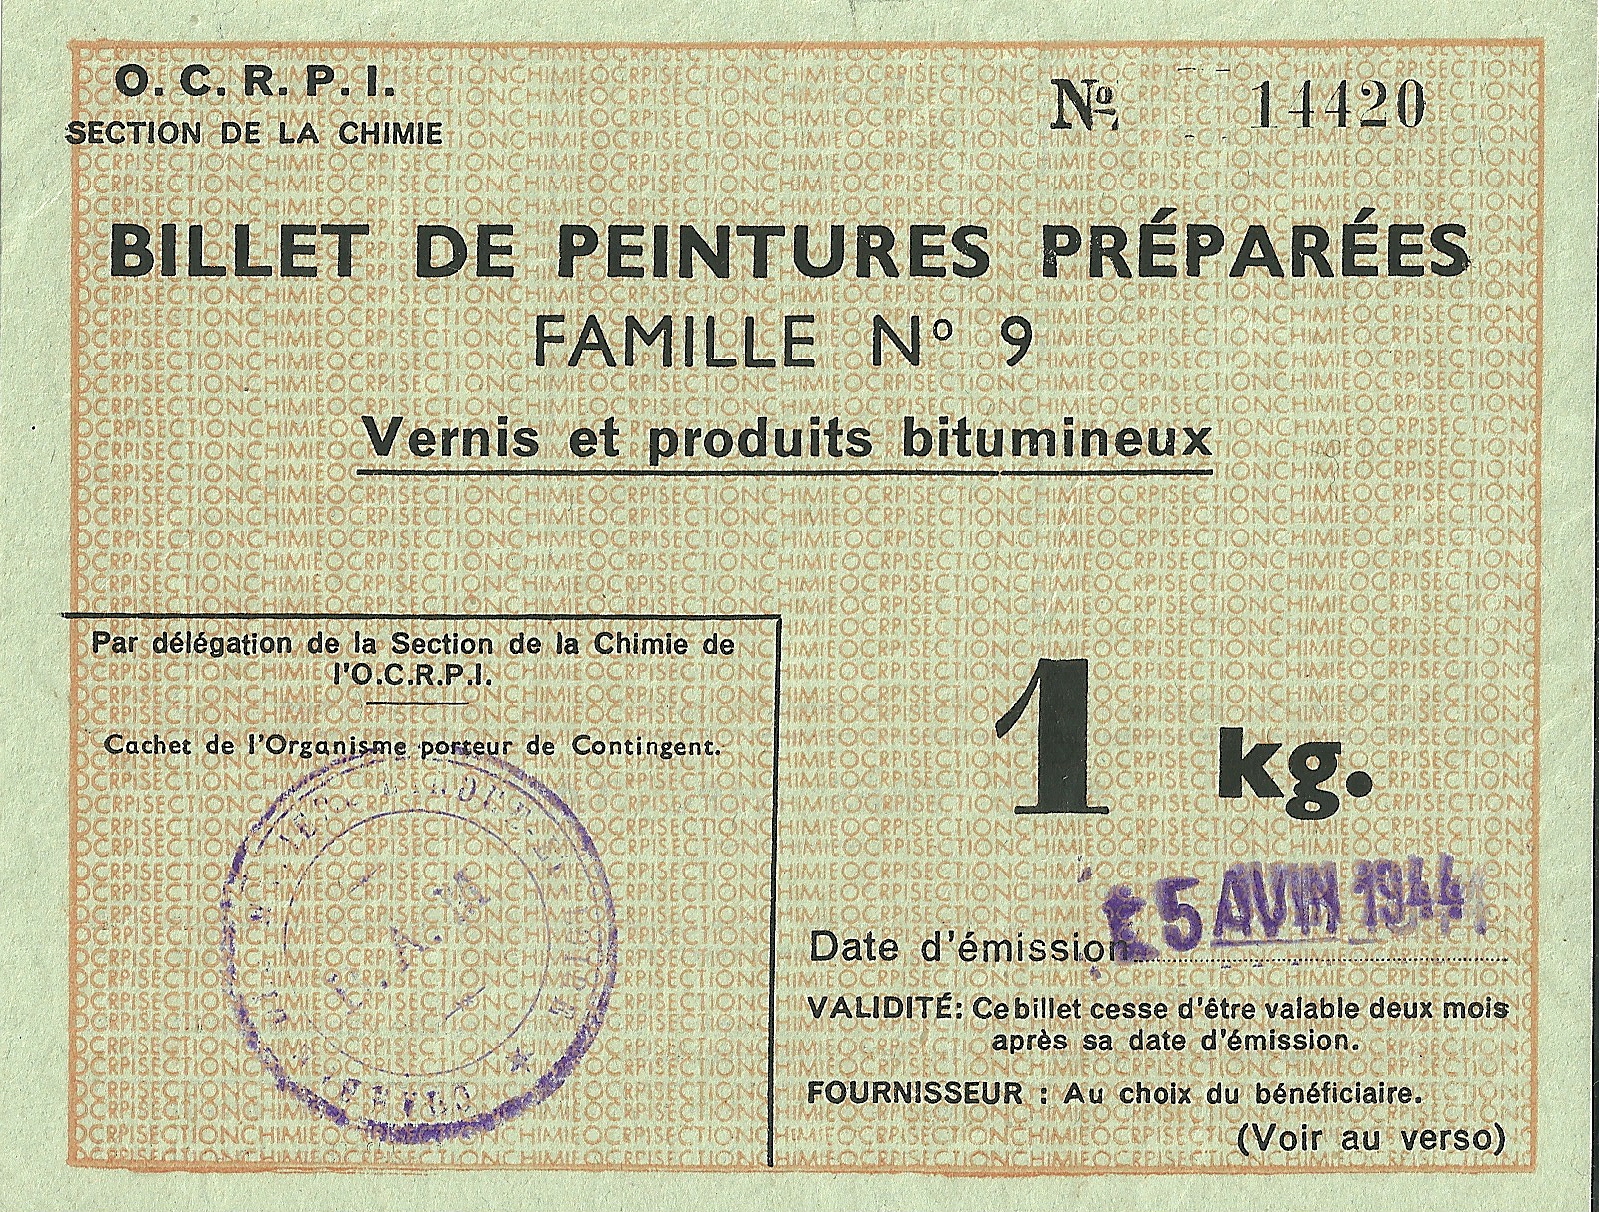 SECTION DE LA CHIMIE - BILLET DE PEINTURE PREPAREES FAMILLE N°9 - Vernis et produits bitumineux - 1 kg - 14 420